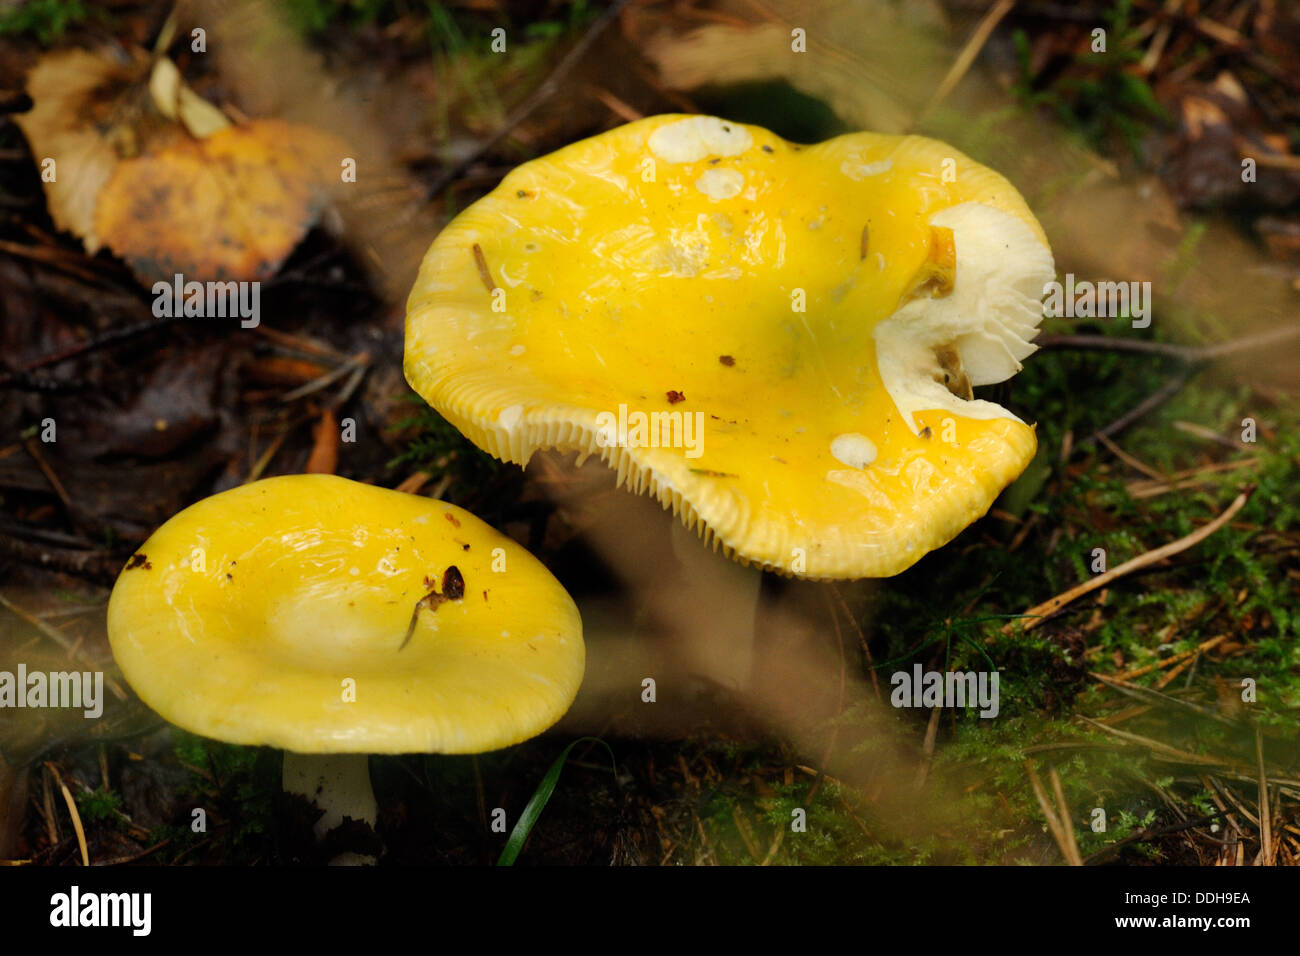 Palude di giallo (russula Russula claroflava) o giallo brittlegill palude, è un basidiomicete funghi del genere Russula. Foto Stock